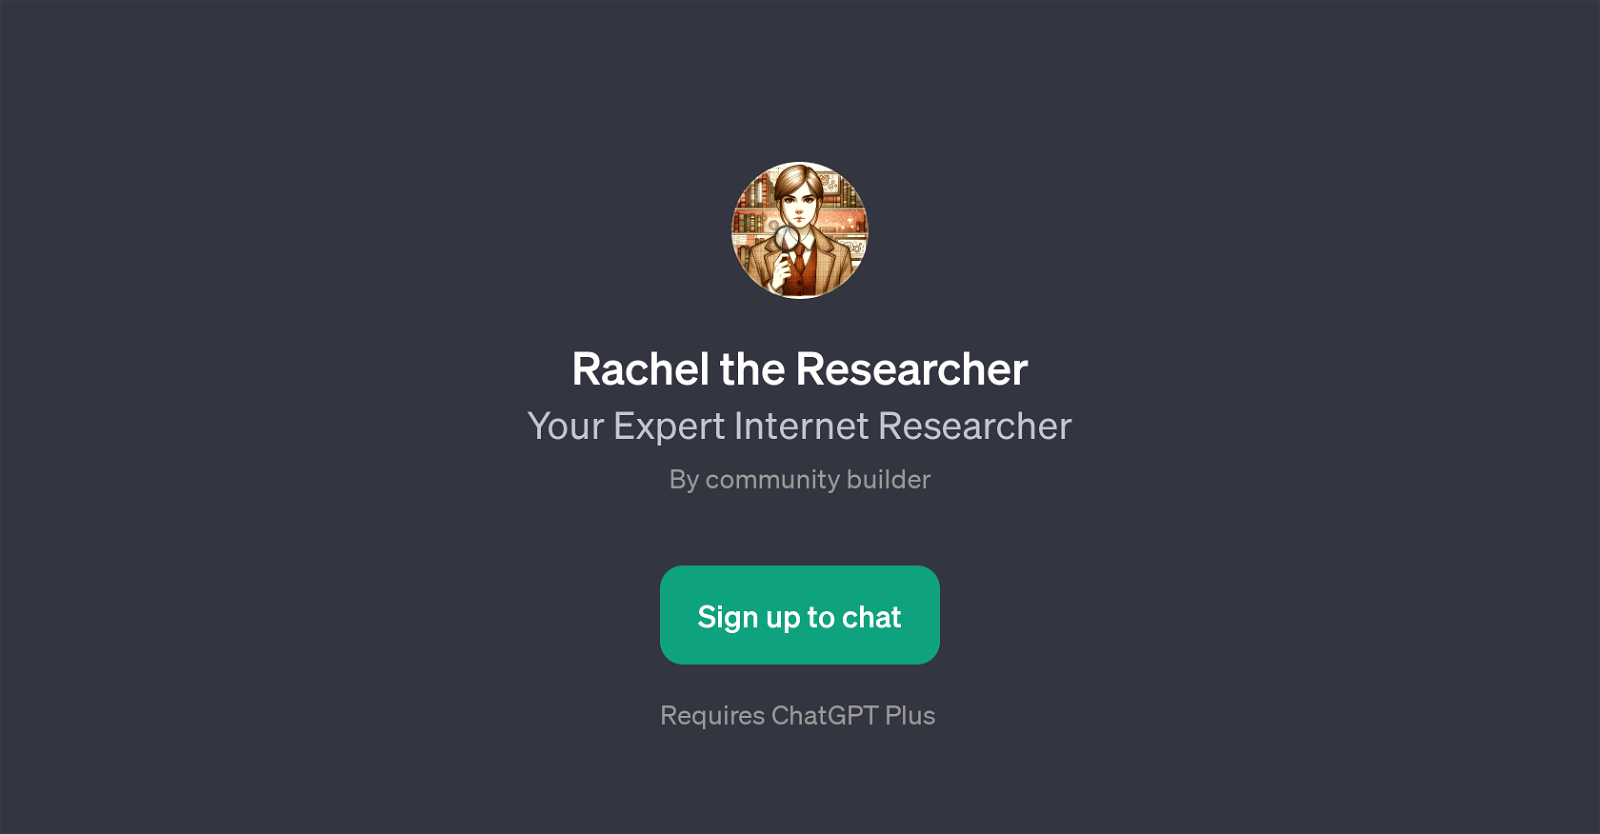 Rachel the Researcher website